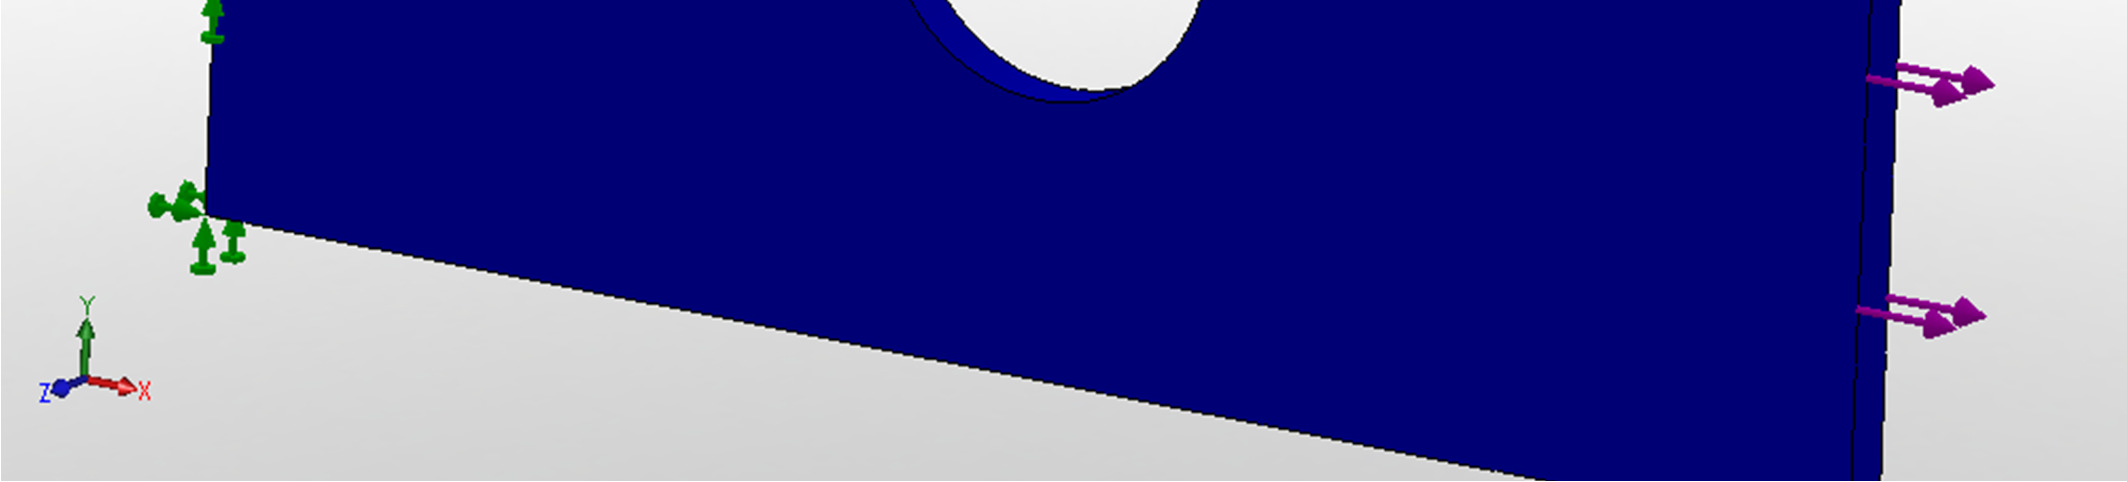 Συντελεστής ασφαλείας Με µπλε χρώµα απεικονίζεται